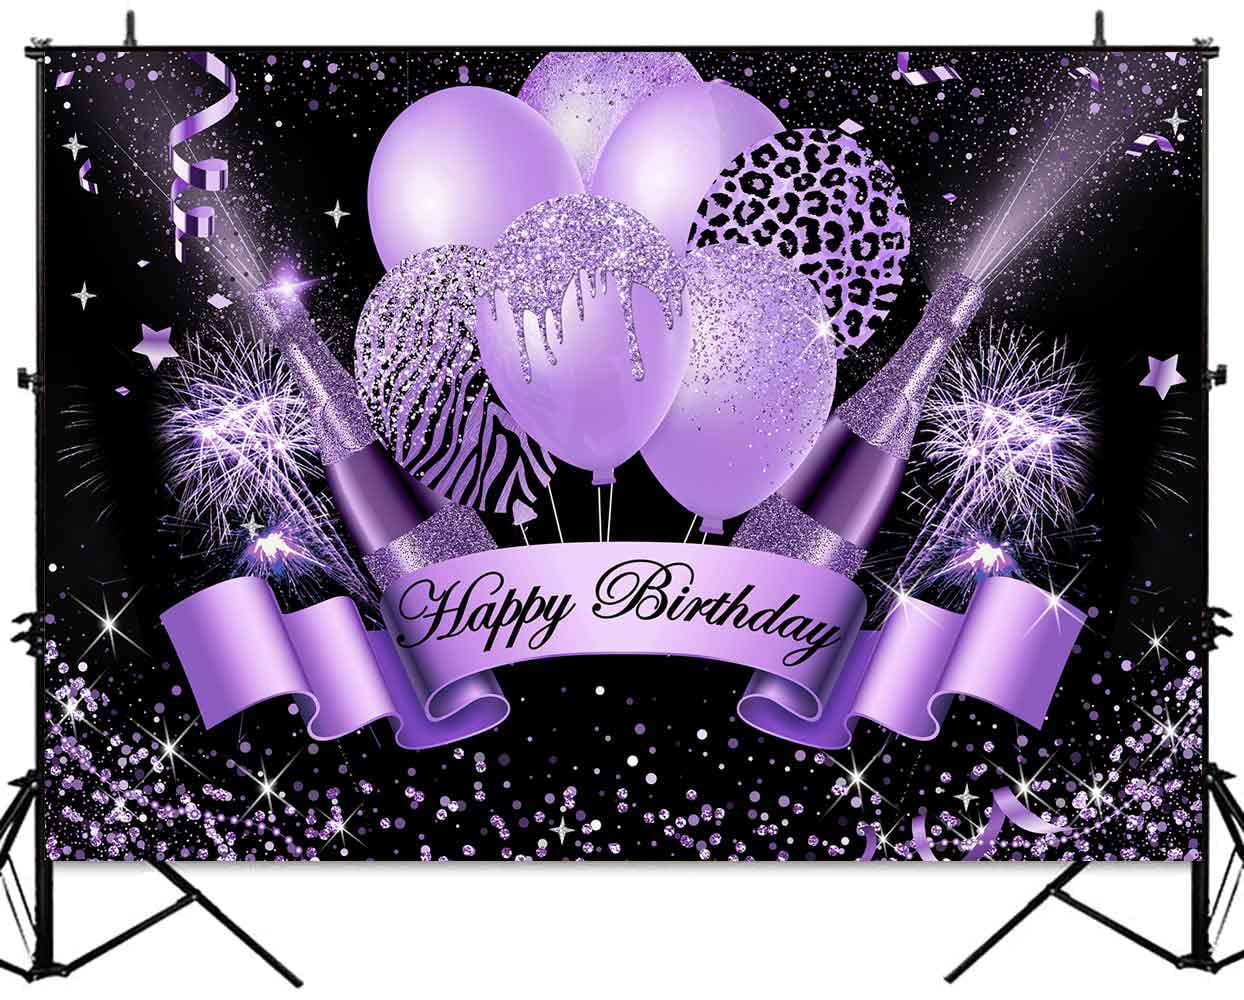 Phông nền sinh nhật màu tím là một lựa chọn lý tưởng để tạo ra một không gian sinh nhật đẹp mắt và đầy màu sắc. Hãy cùng xem hình ảnh về phông nền này và lấy cảm hứng cho bữa tiệc sinh nhật của bạn!